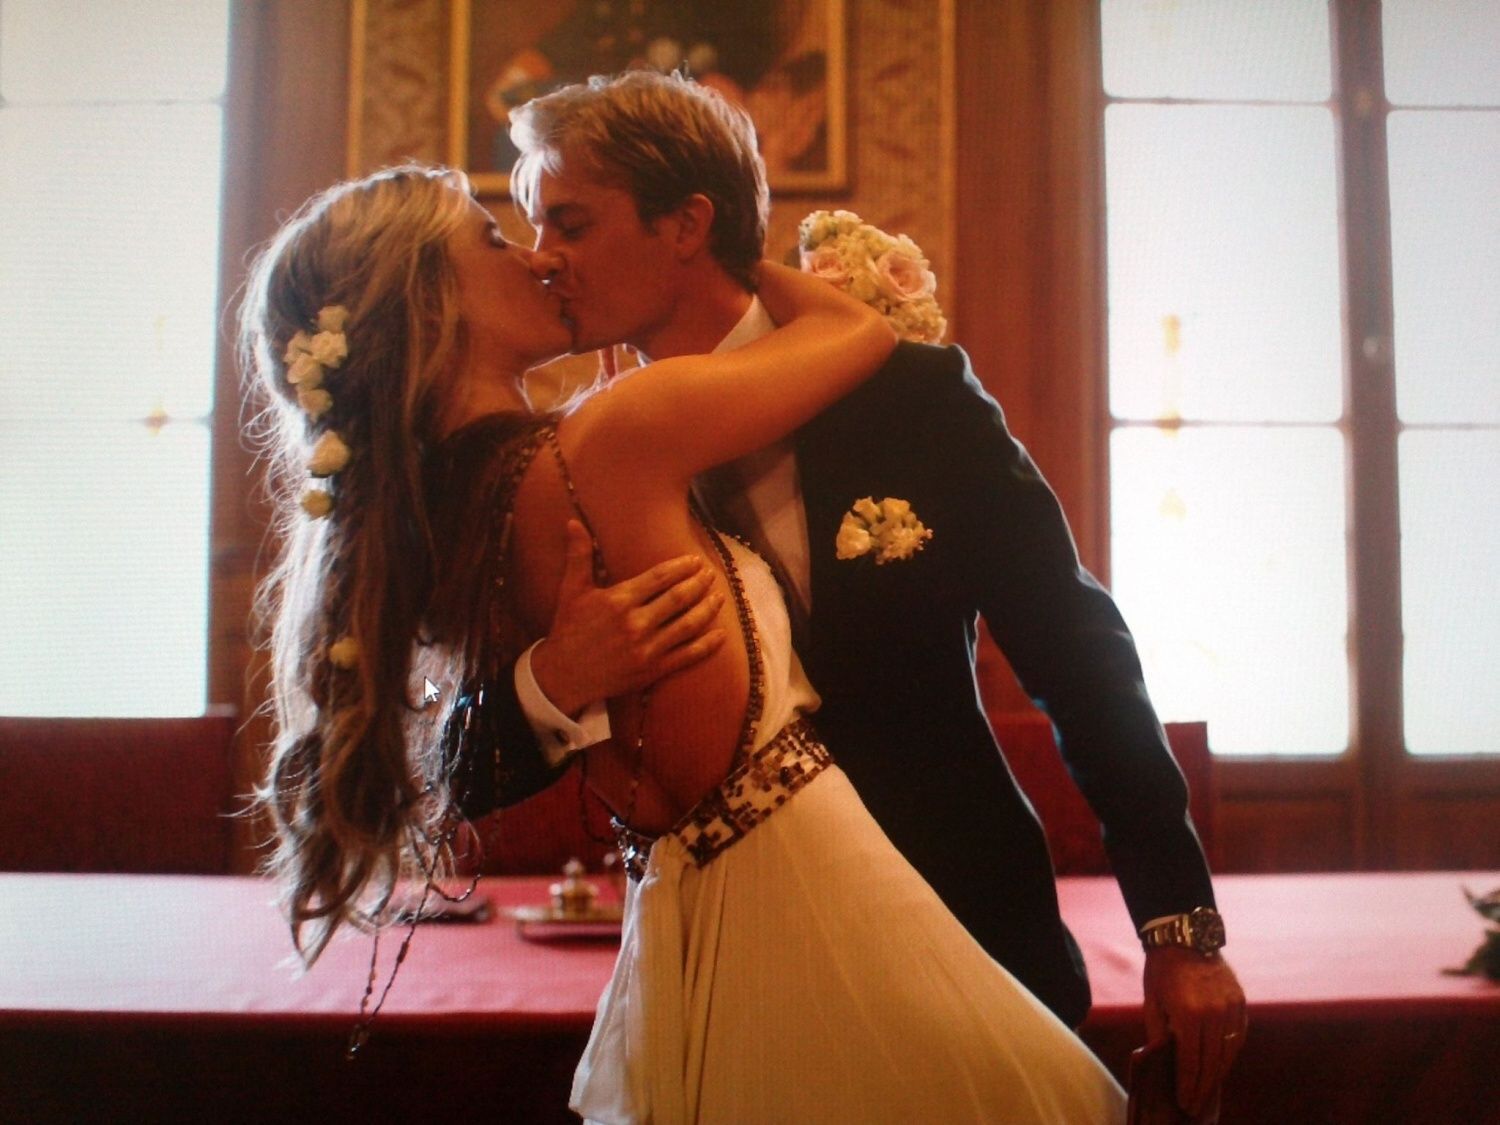 F1:  svatební foto Nico Rosberga a Vivian Siboldové